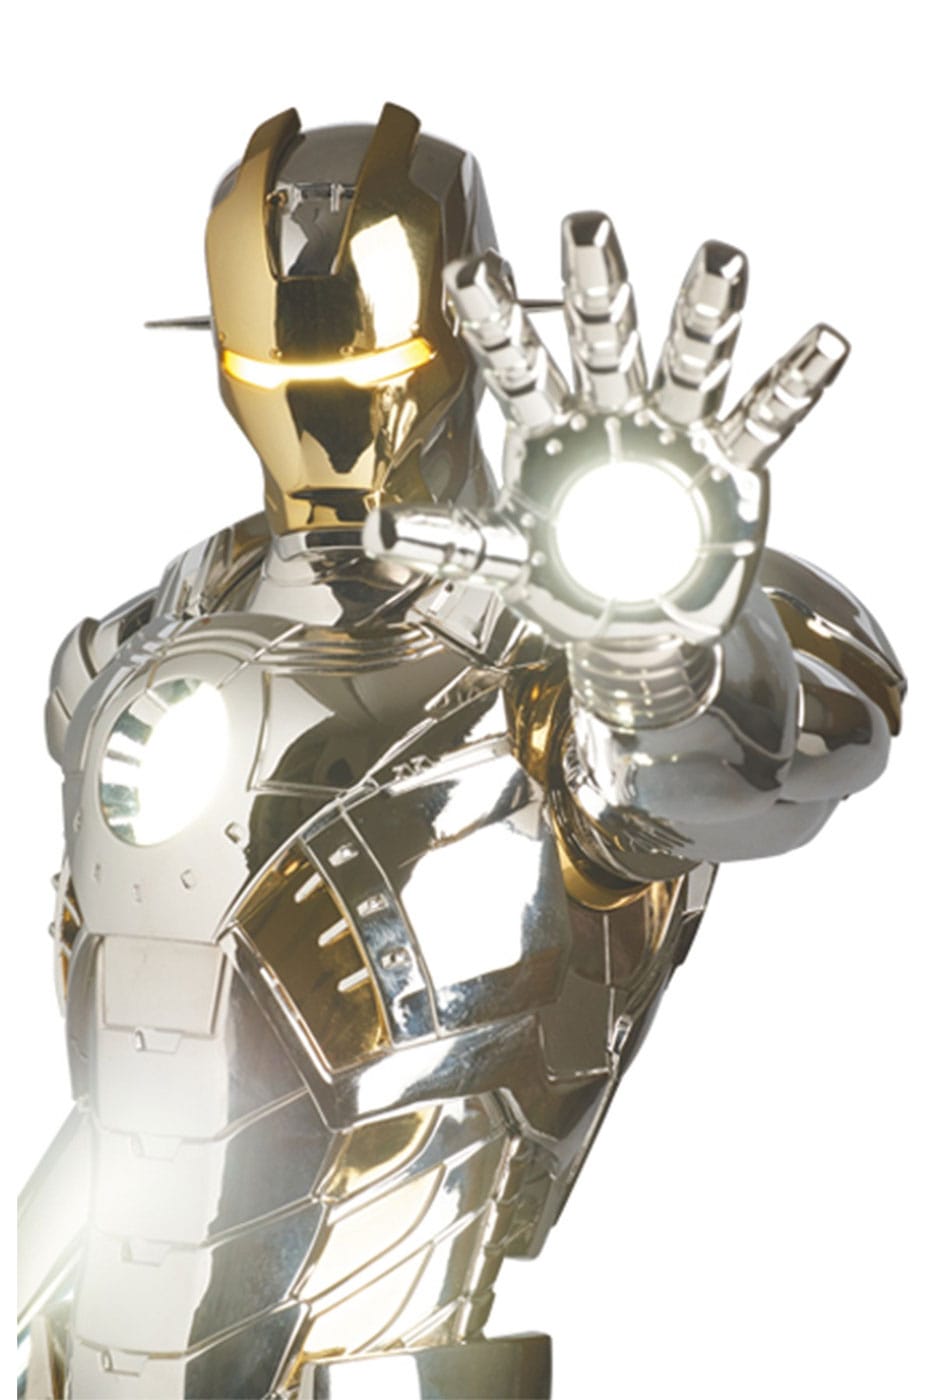 Medicom Toy x Hajime Sorayama 'Iron Man' Statue | Hypebeast